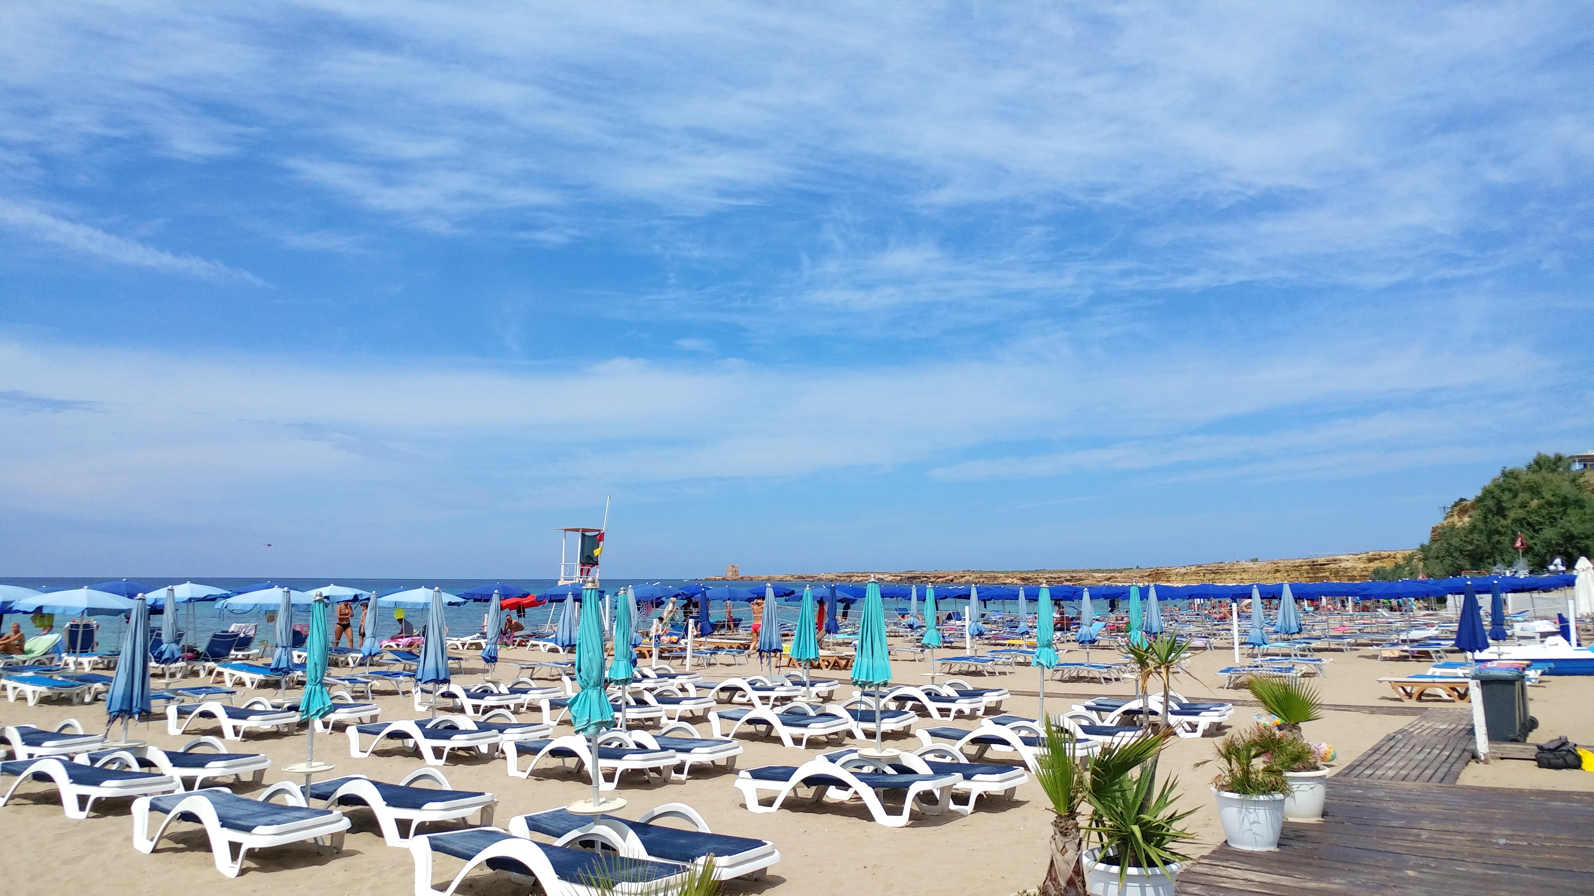 Playas de Palermo - Playa de Magaggiari